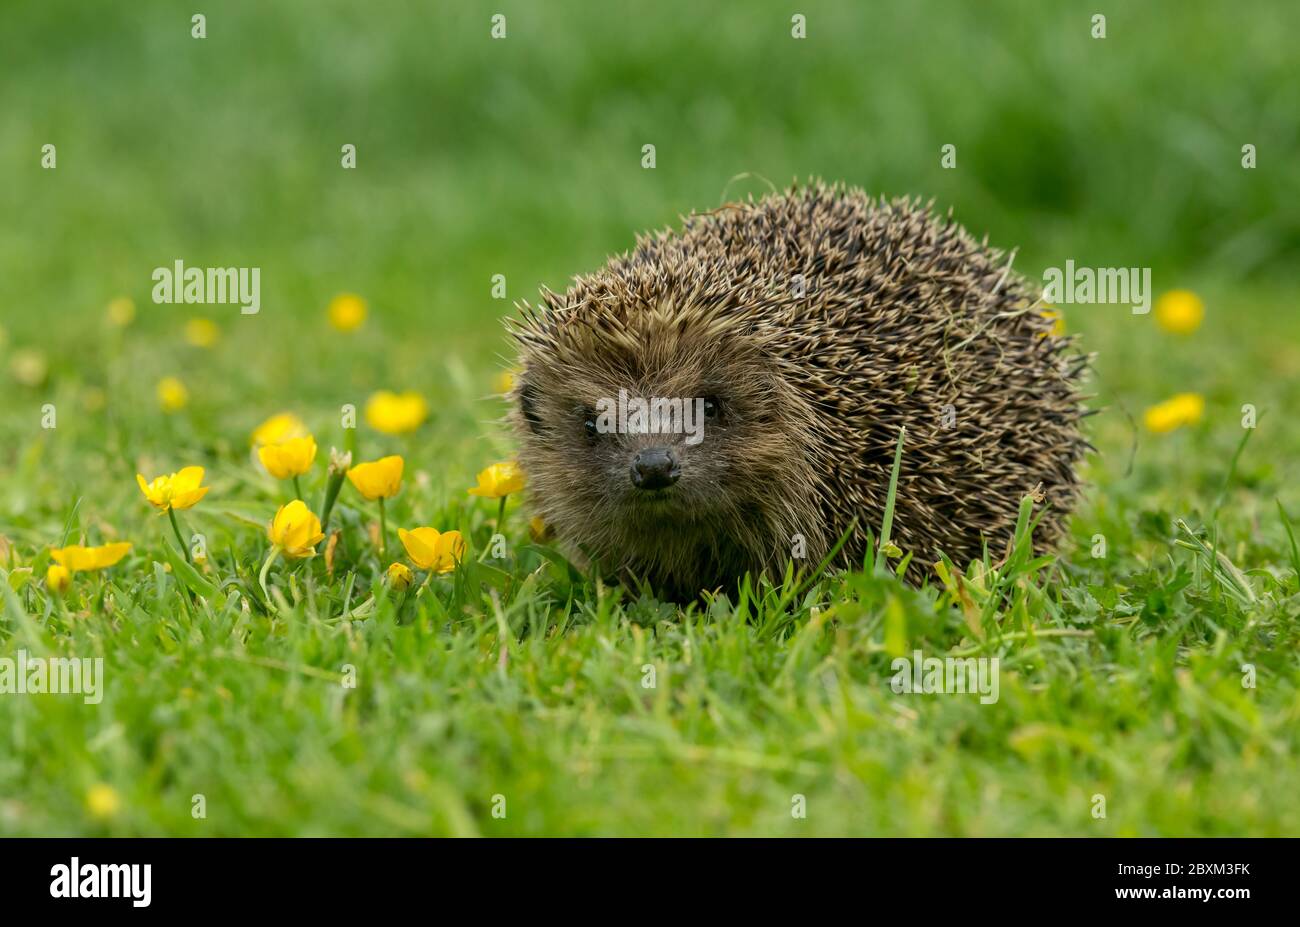 Hedgehog (Nombre científico: Erinaceus europaeus) Hedgehog salvaje, nativo, europeo en un jardín con buttercups amarillo. Horizontal. Espacio para copia Foto de stock